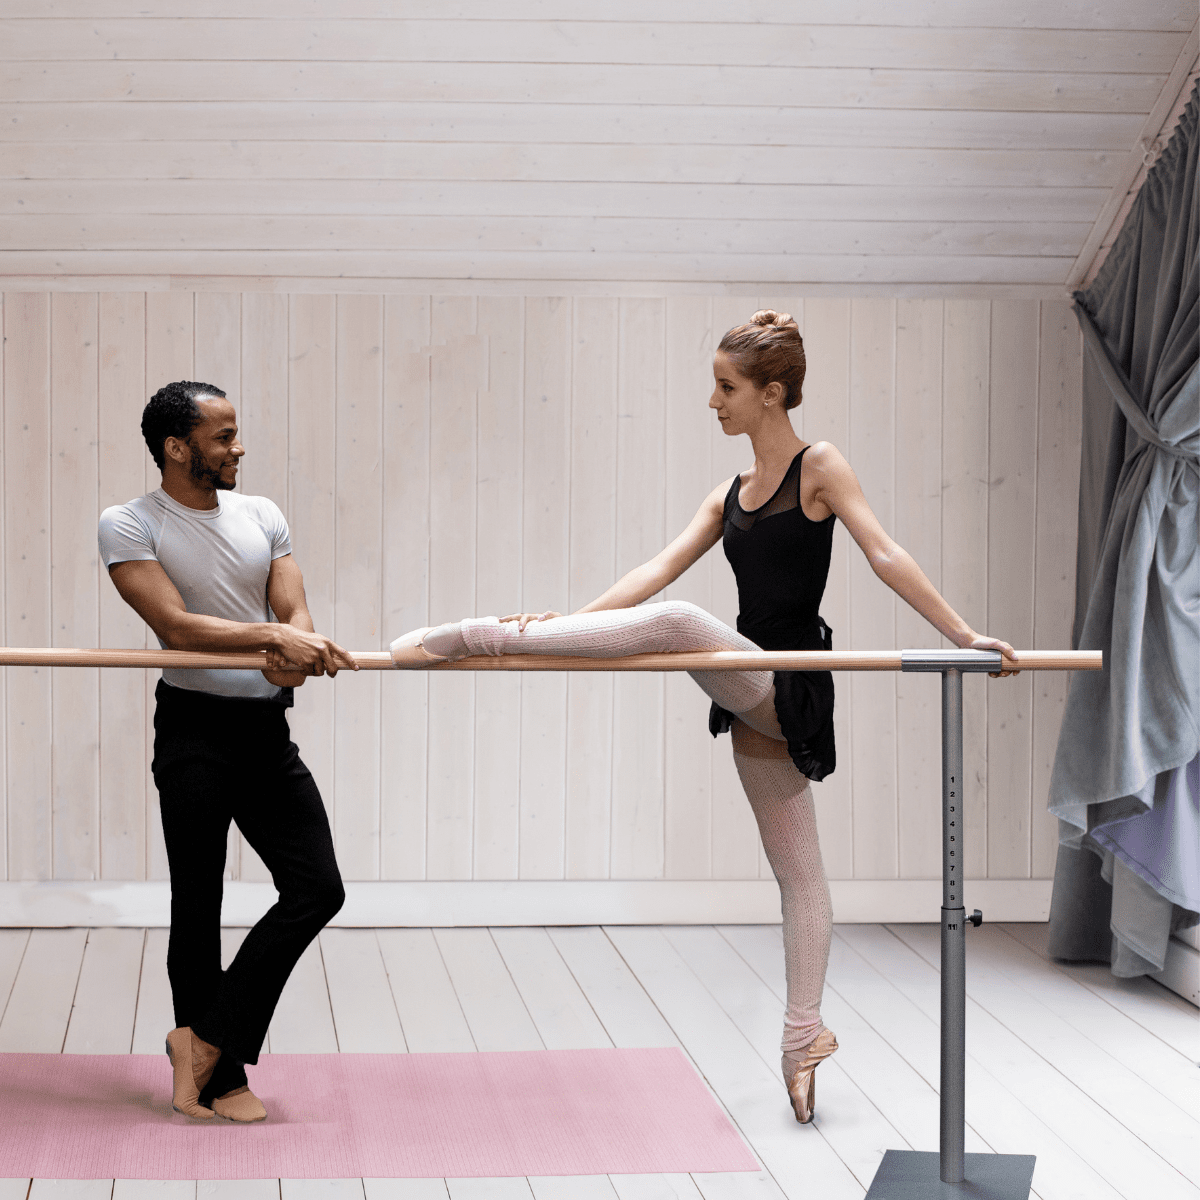 Comment bien choisir la hauteur d'une barre de ballet?